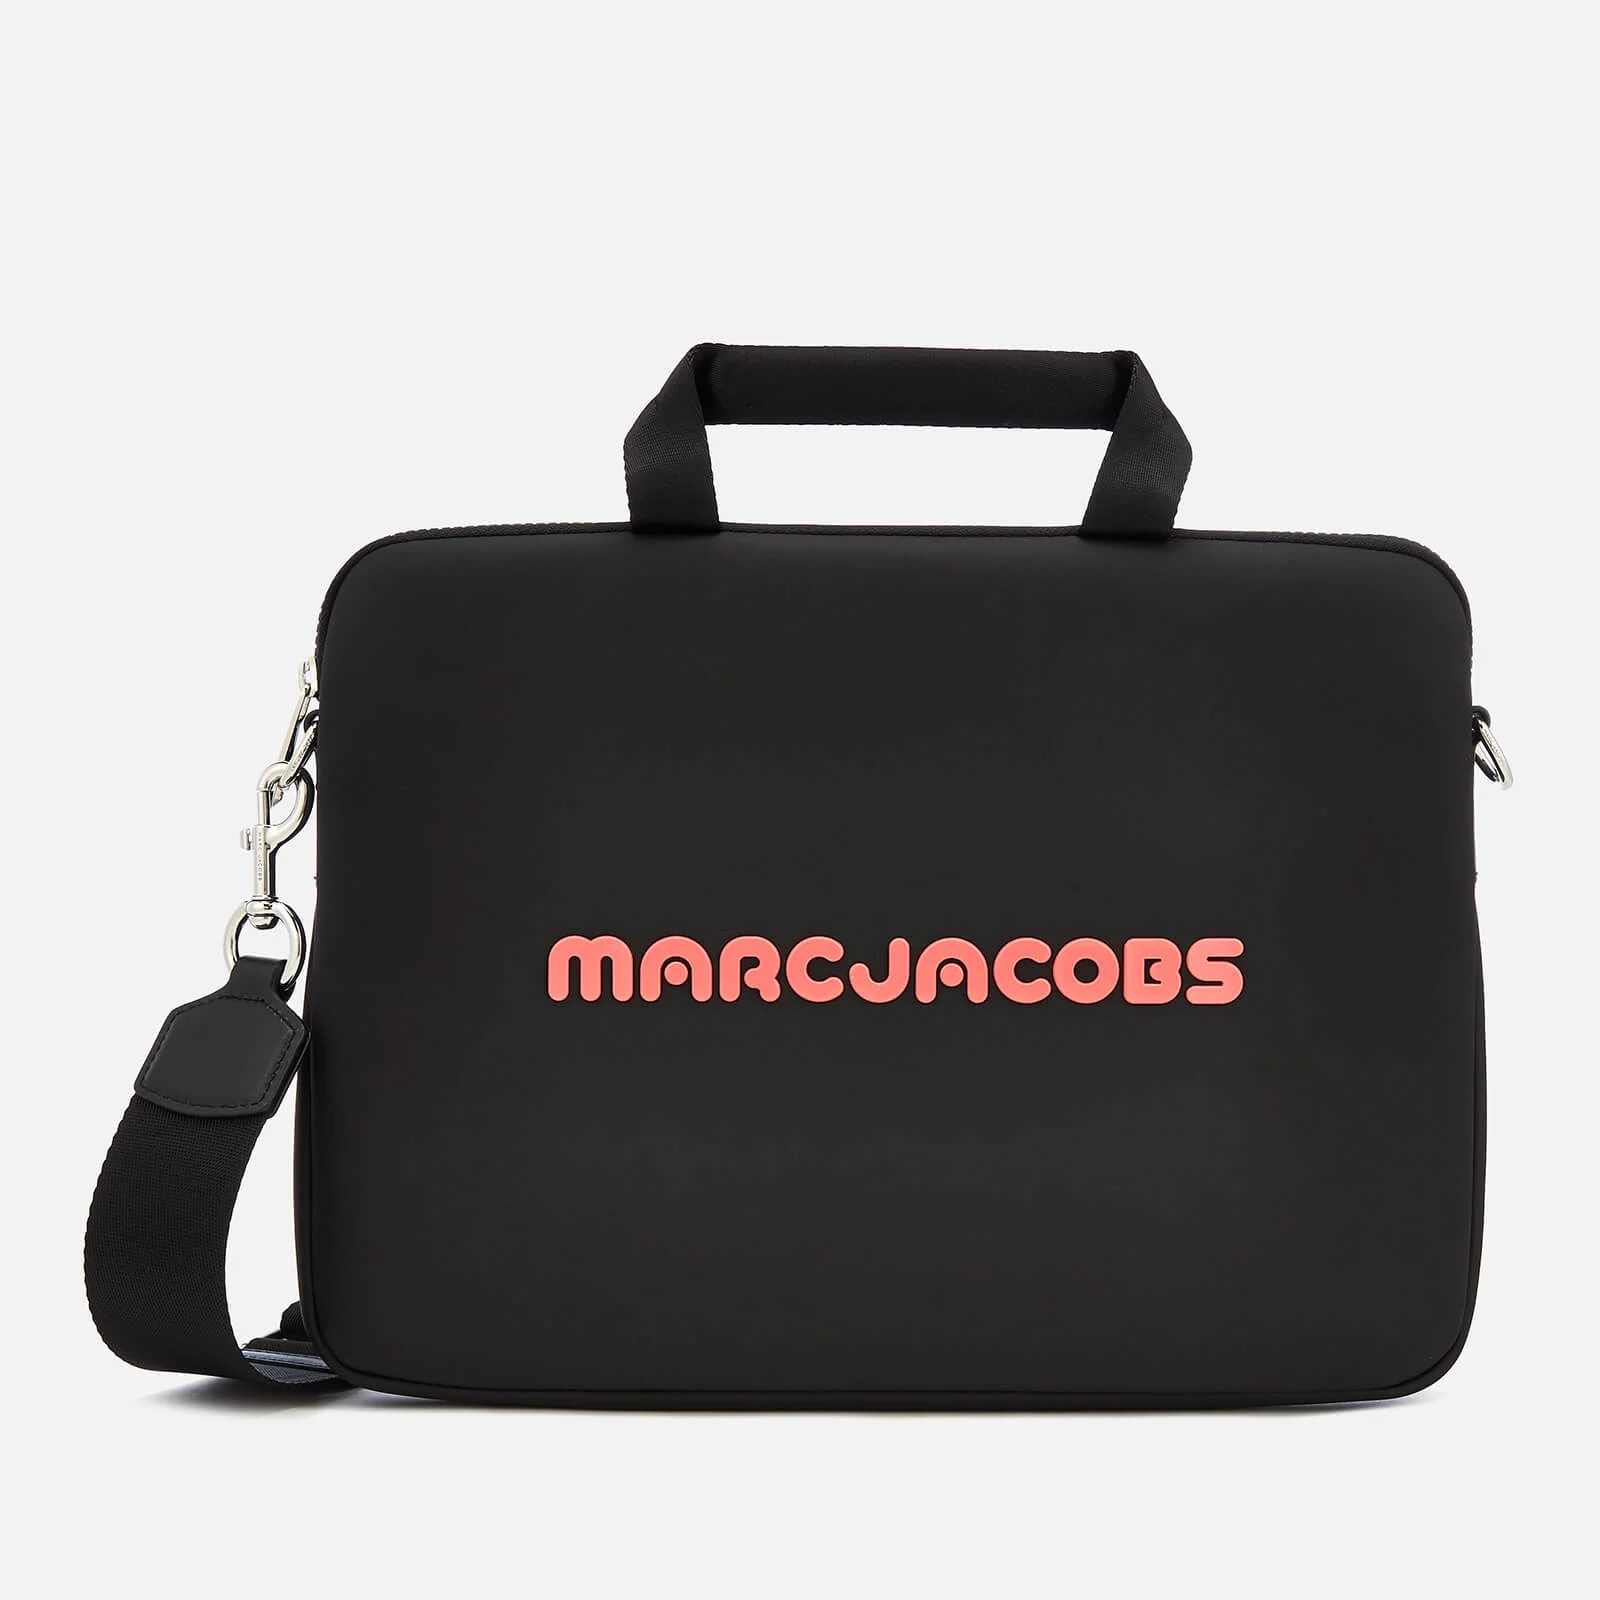 Marc Jacobs Women's 13" Commuter Case - Black/Coral Image 1